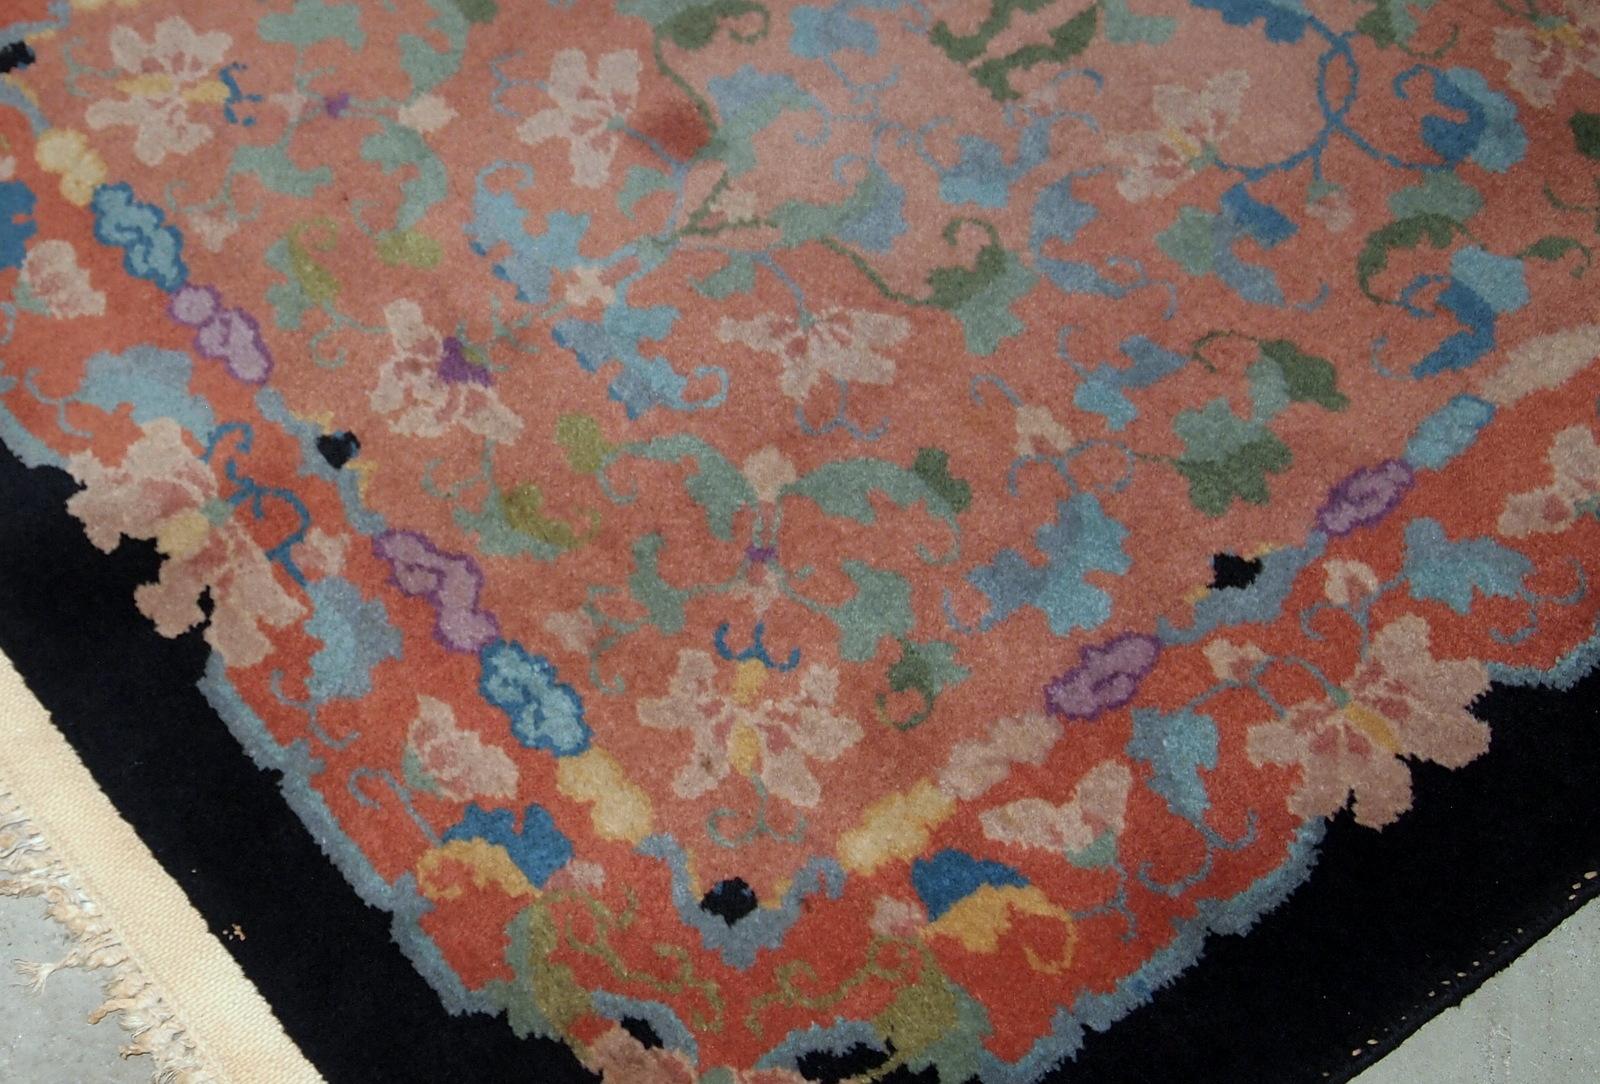 Antiker chinesischer Art-Déco-Teppich mit ungewöhnlichem abstraktem Muster in Pfirsich-, Himmelblau-, Violett- und Eierschalentönen. Der Teppich ist in einem guten Originalzustand.

-zustand: original gut,

- um: 1920er Jahre,

-größe: 2.10' x